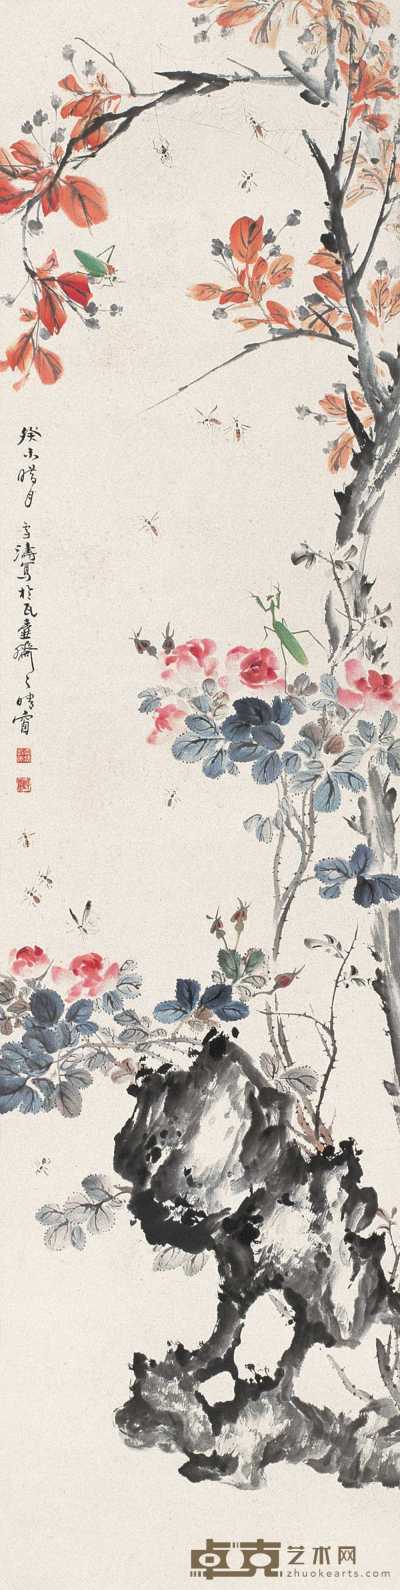 王雪涛 1943年作 花卉草虫 立轴 138×35cm.